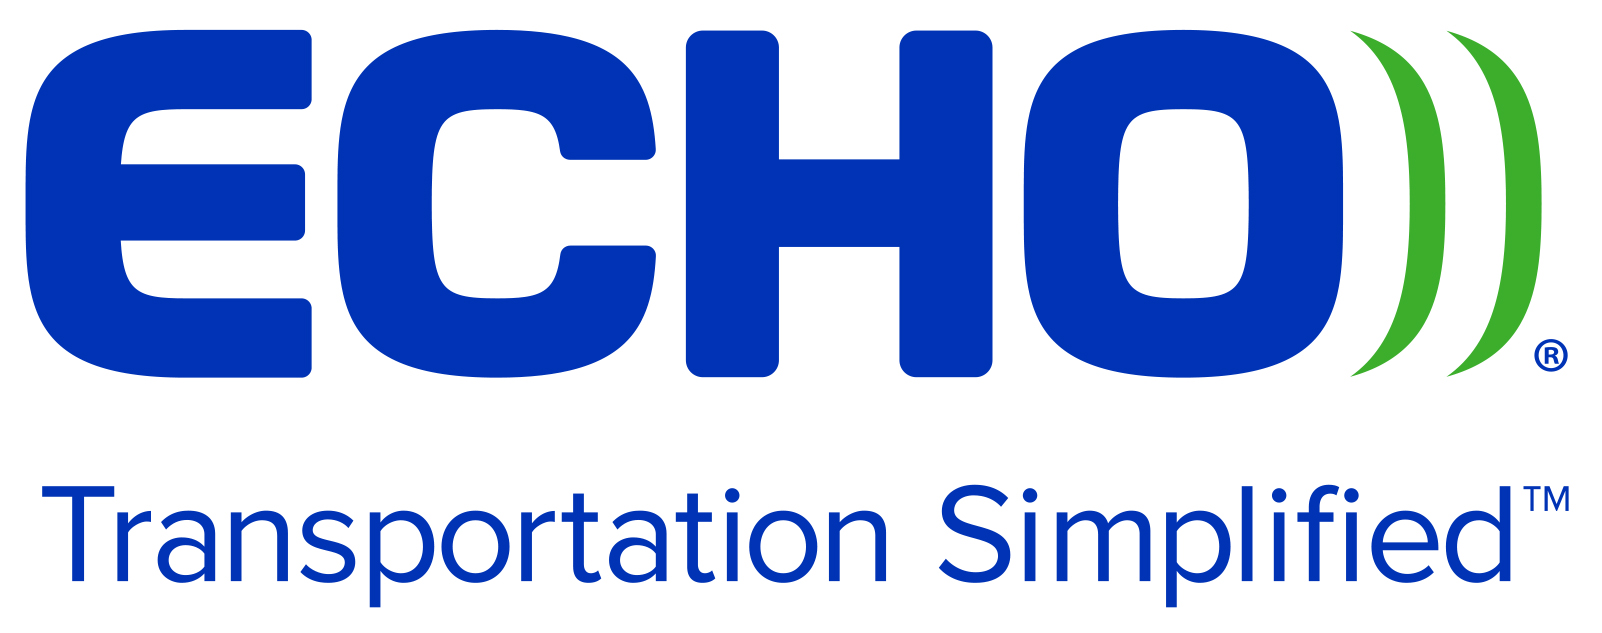 Echo Global Logistics, Inc. Logo